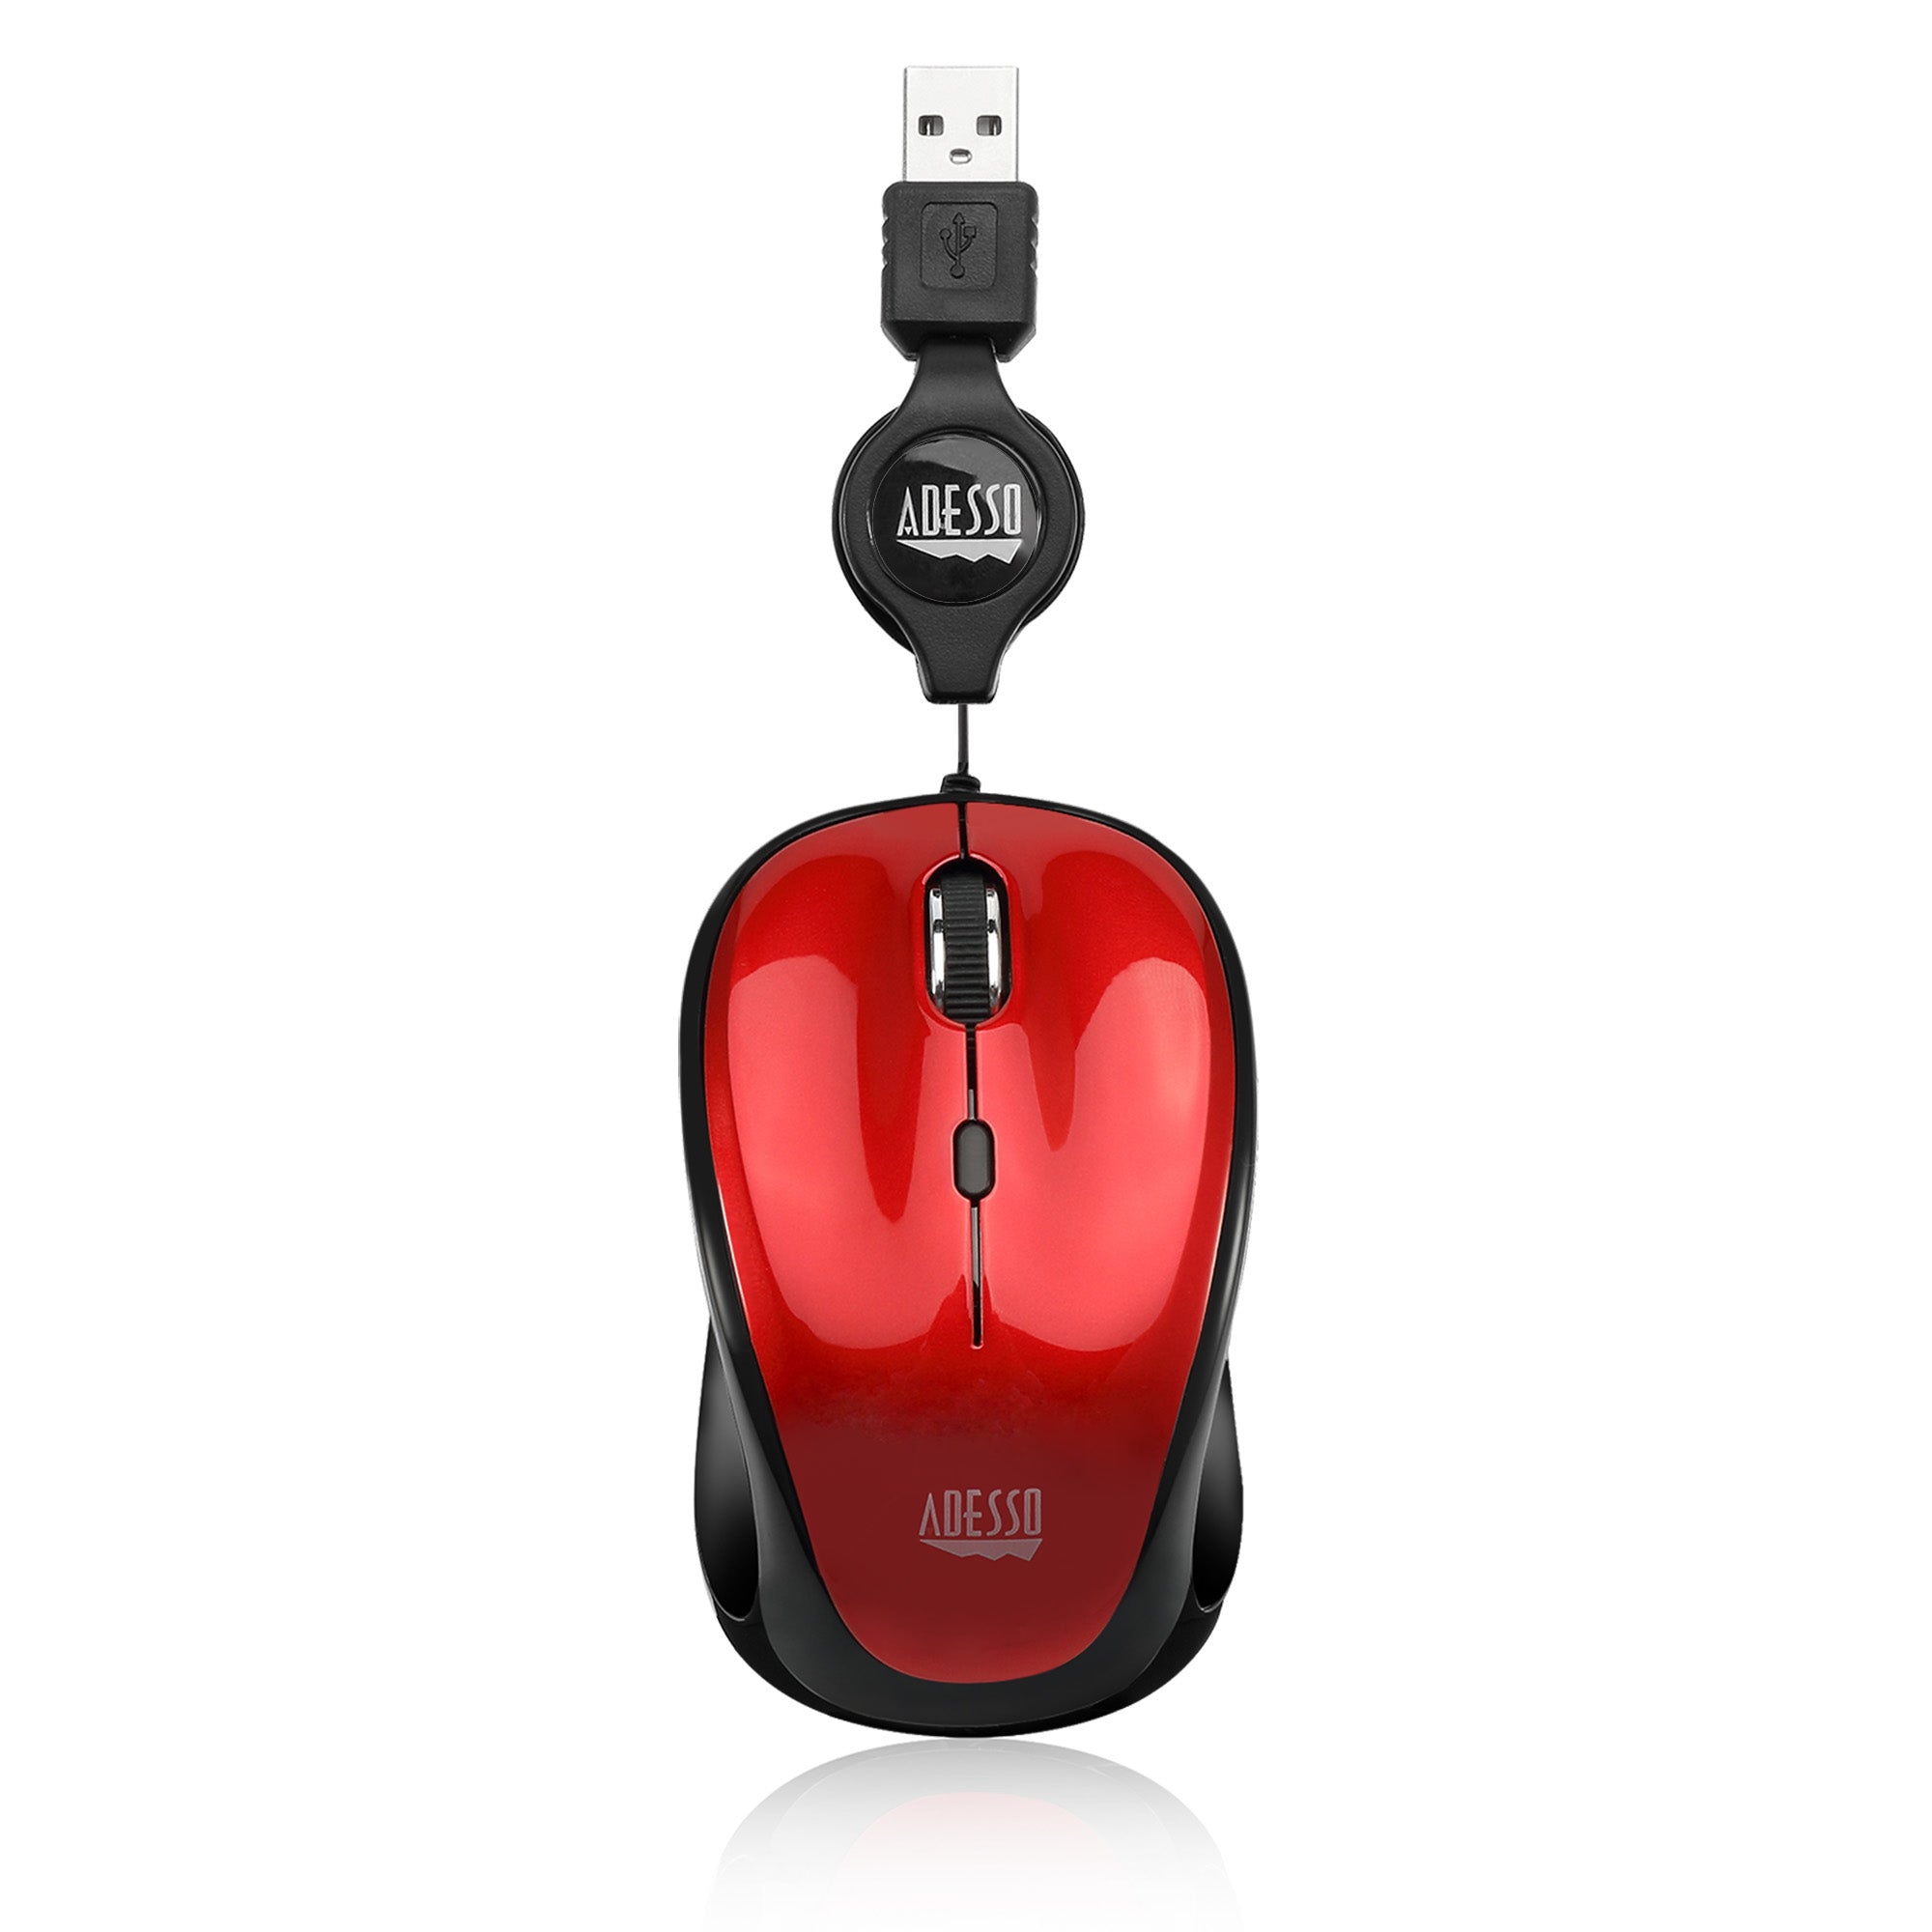 iMouse S8R - USB Illuminated Retractable Mini Mouse